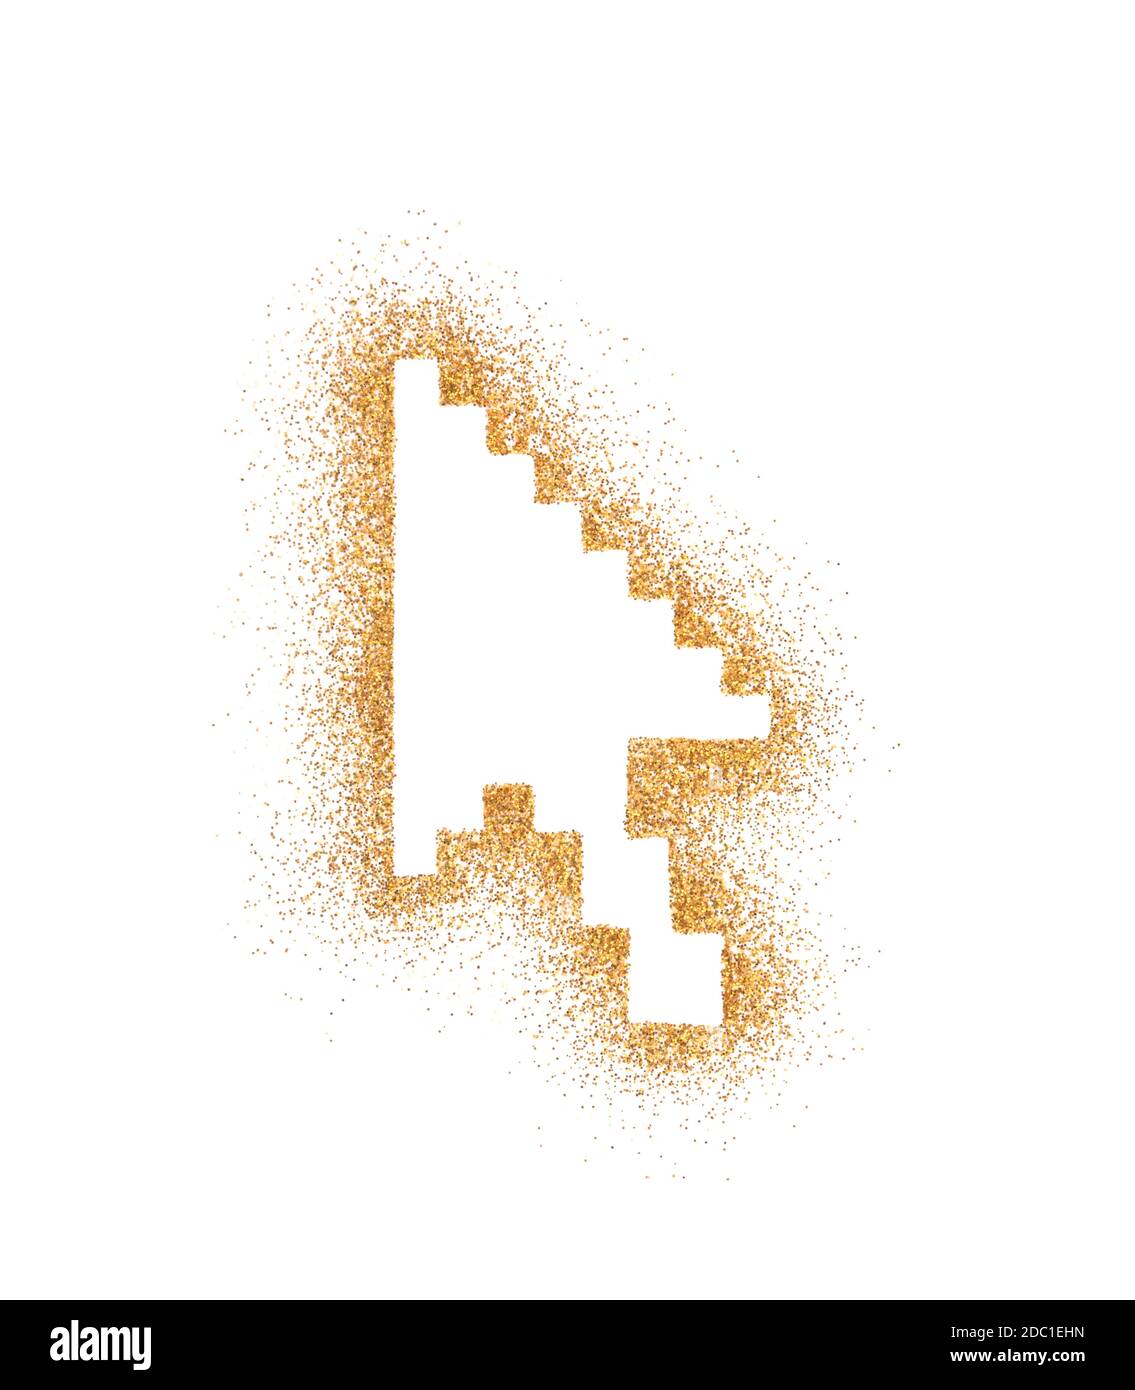 Simbolo della freccia del computer su glitter dorato isolato su sfondo bianco Foto Stock